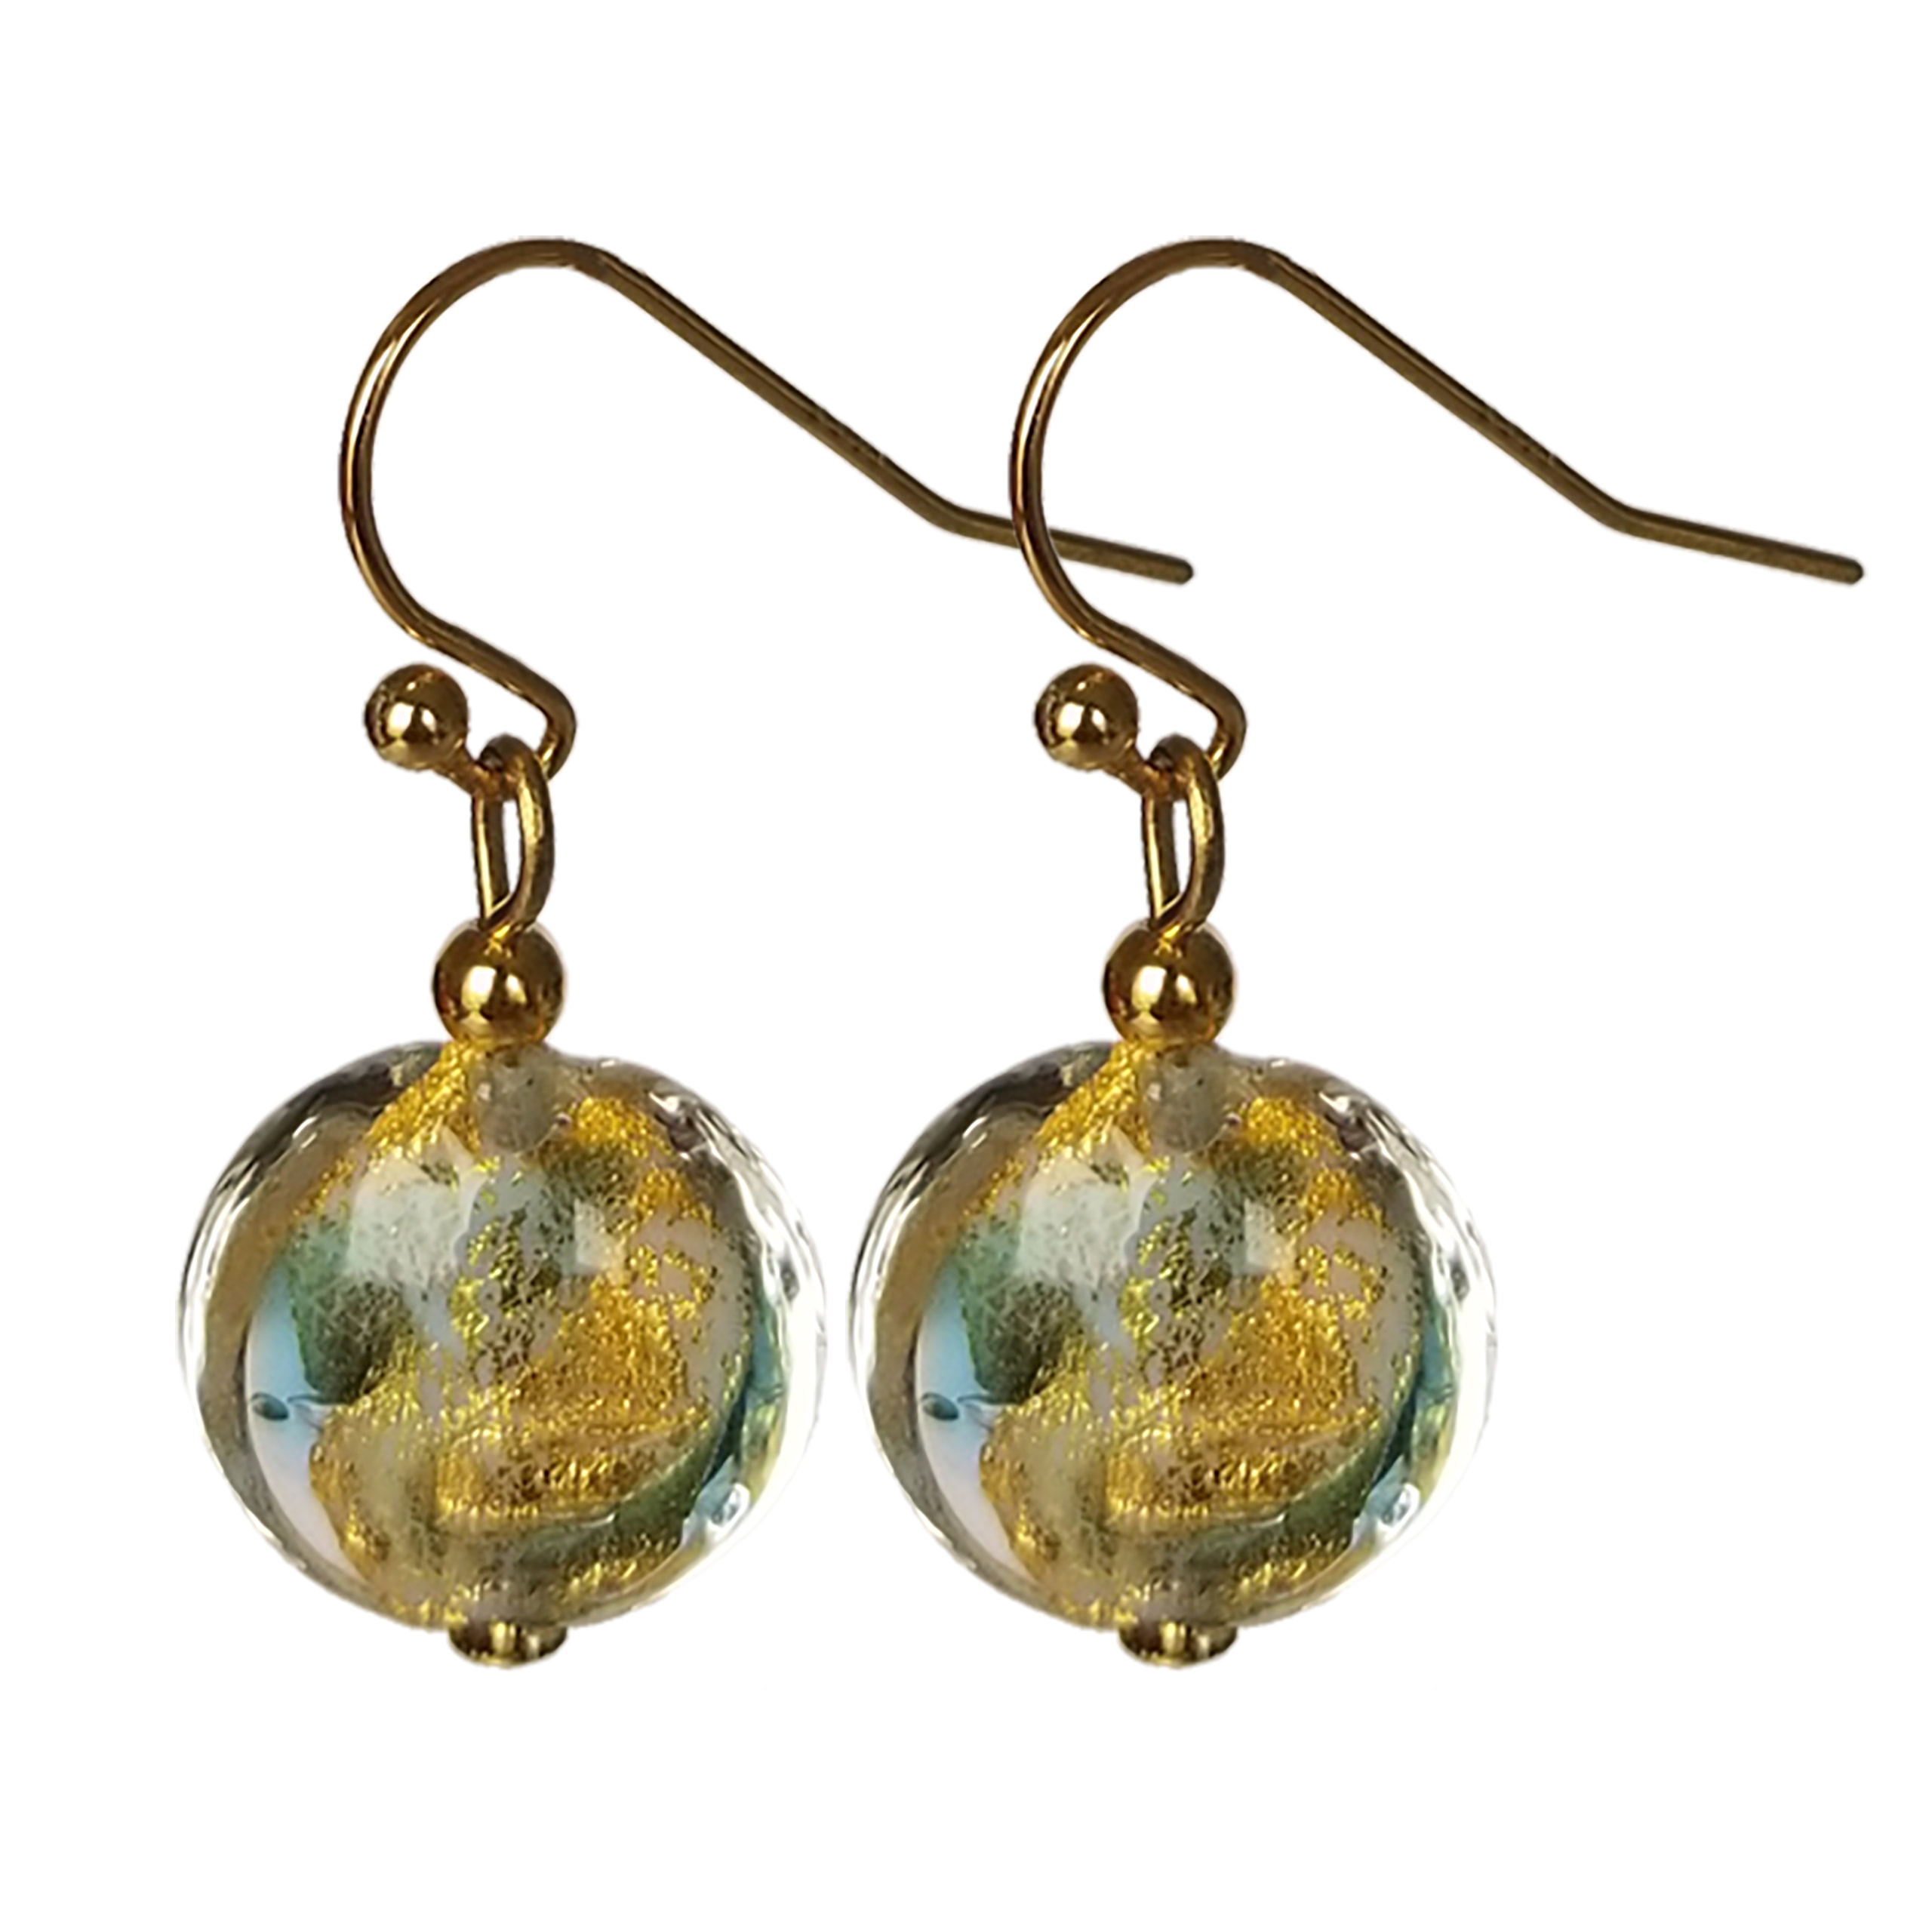 Lentil Bead Sky Blue/Gold Swirl Murano Glass Earrings